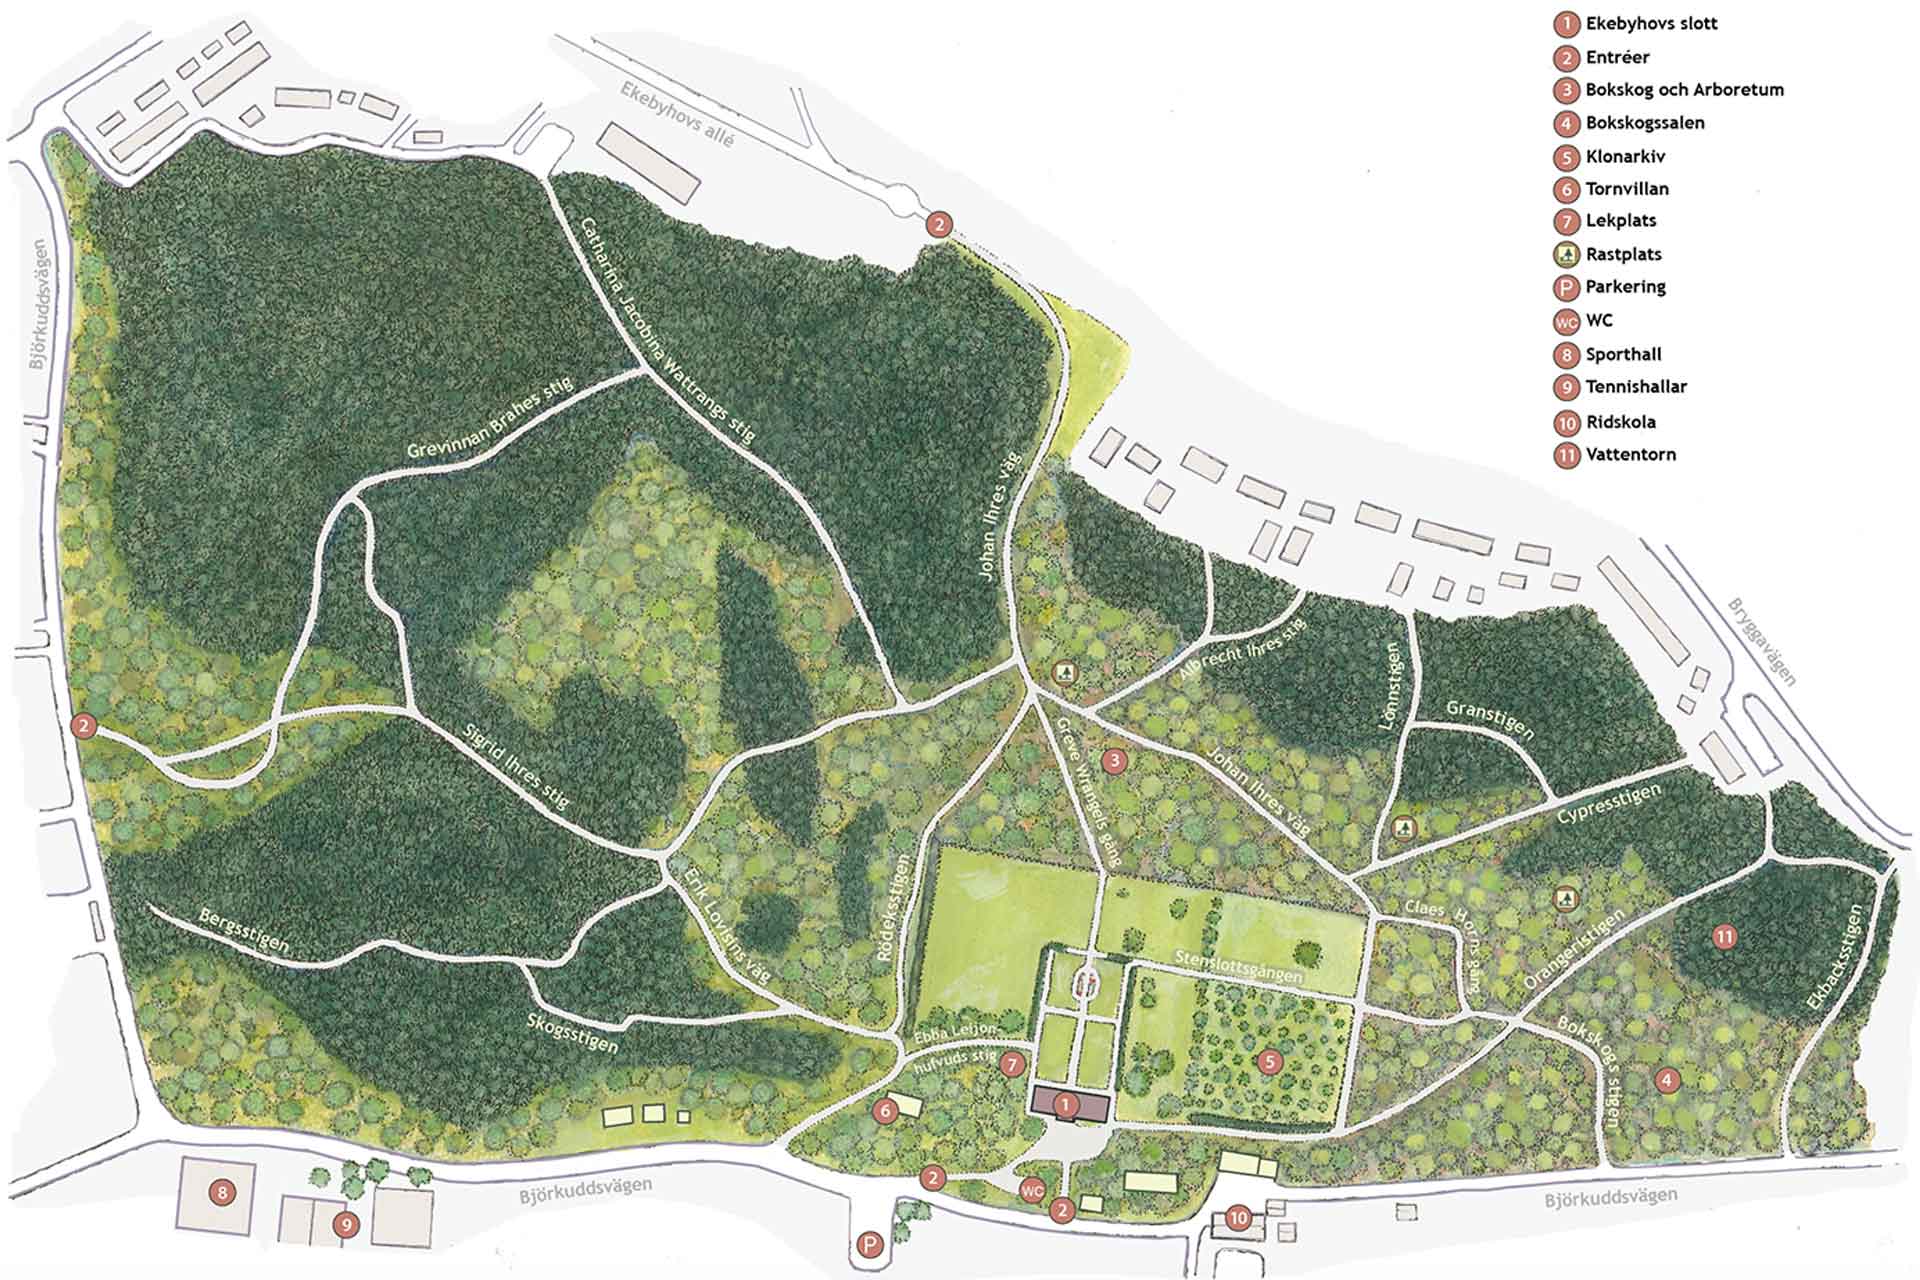 Illustrerad karta över Ekebyhovs slottspark.